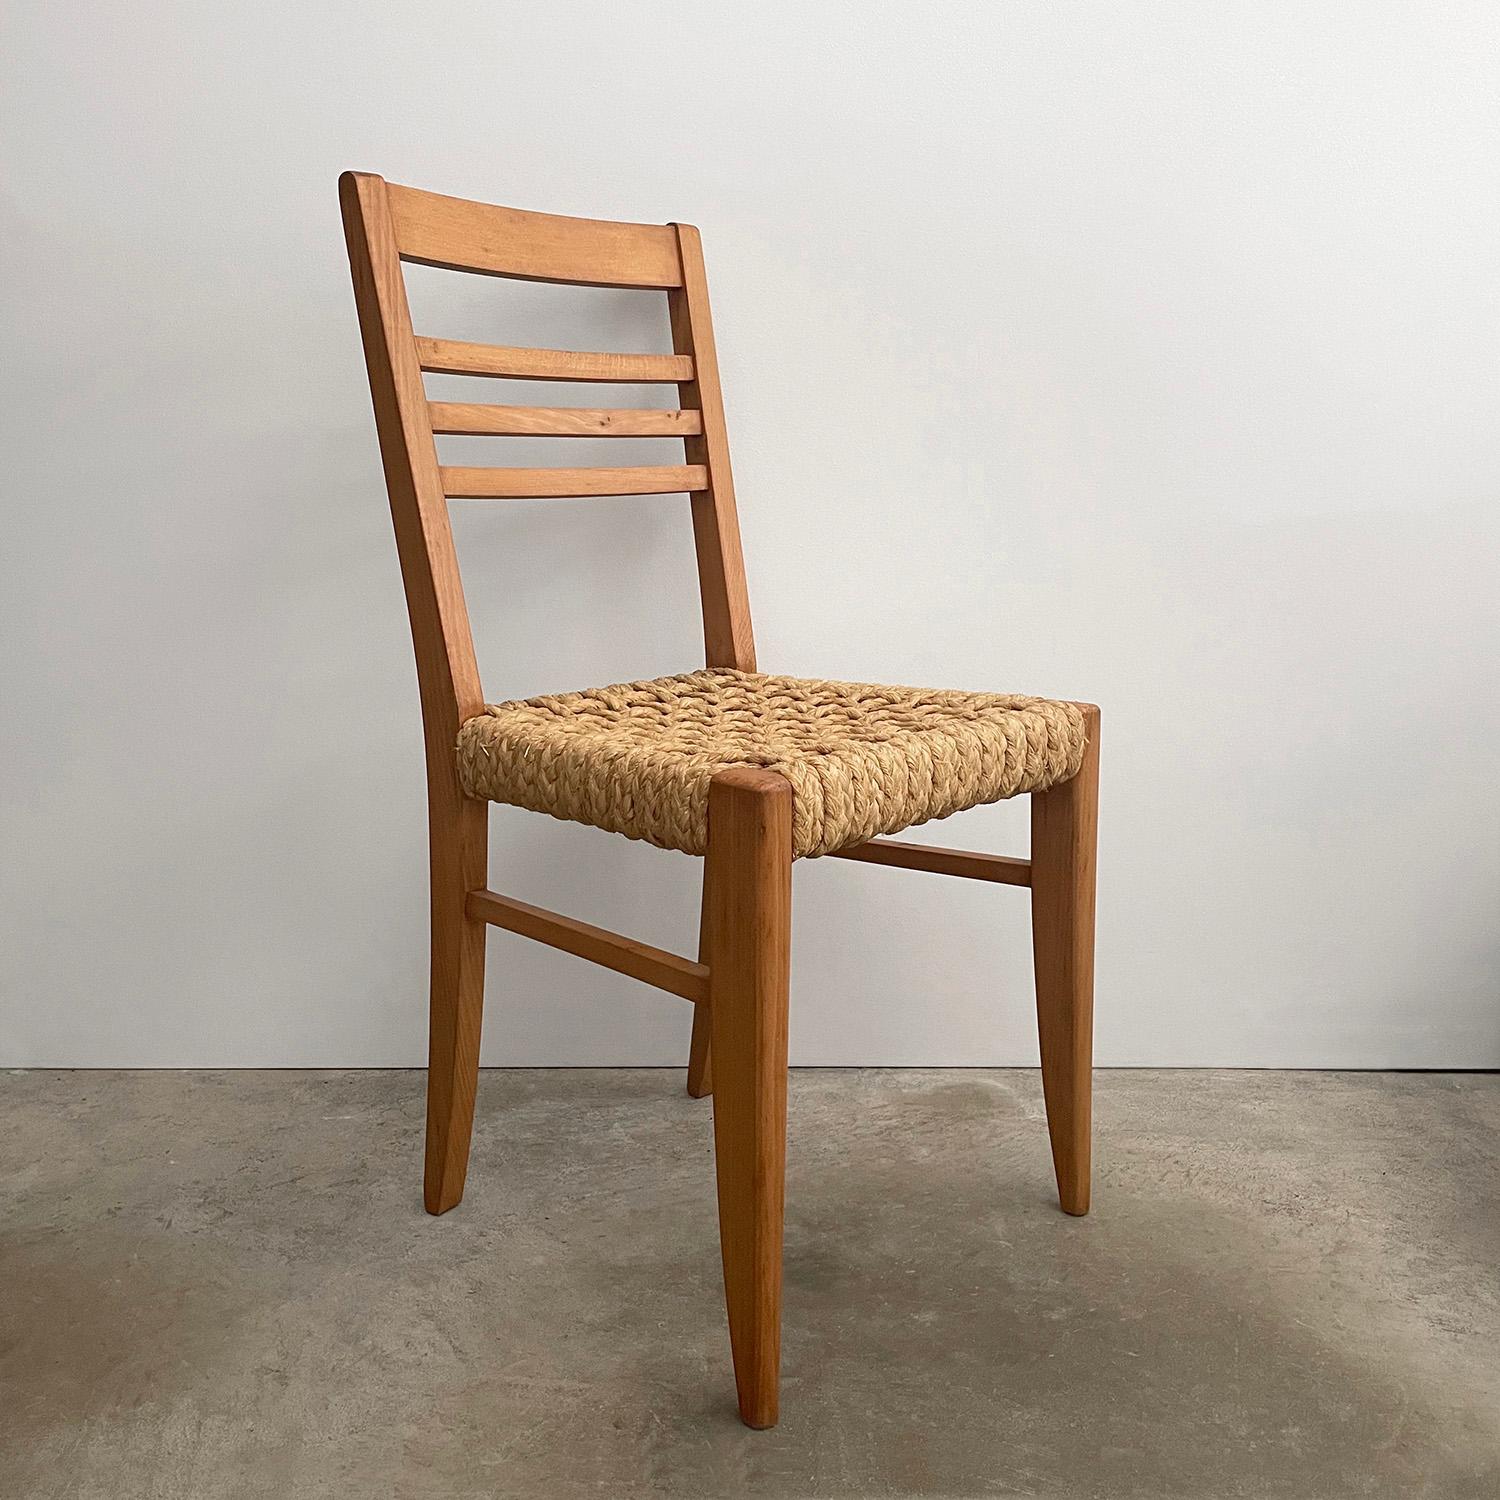 Audoux-Minet Beistellstuhl aus französischer Eiche und Seilen
Entworfen von Adrien Audoux & Frida Minet
Frankreich, ca. 1950er Jahre
Dieser hübsche Beistellstuhl verleiht jedem Raum eine wunderbare Textur und eine reiche Geschichte 
Massivholzrahmen